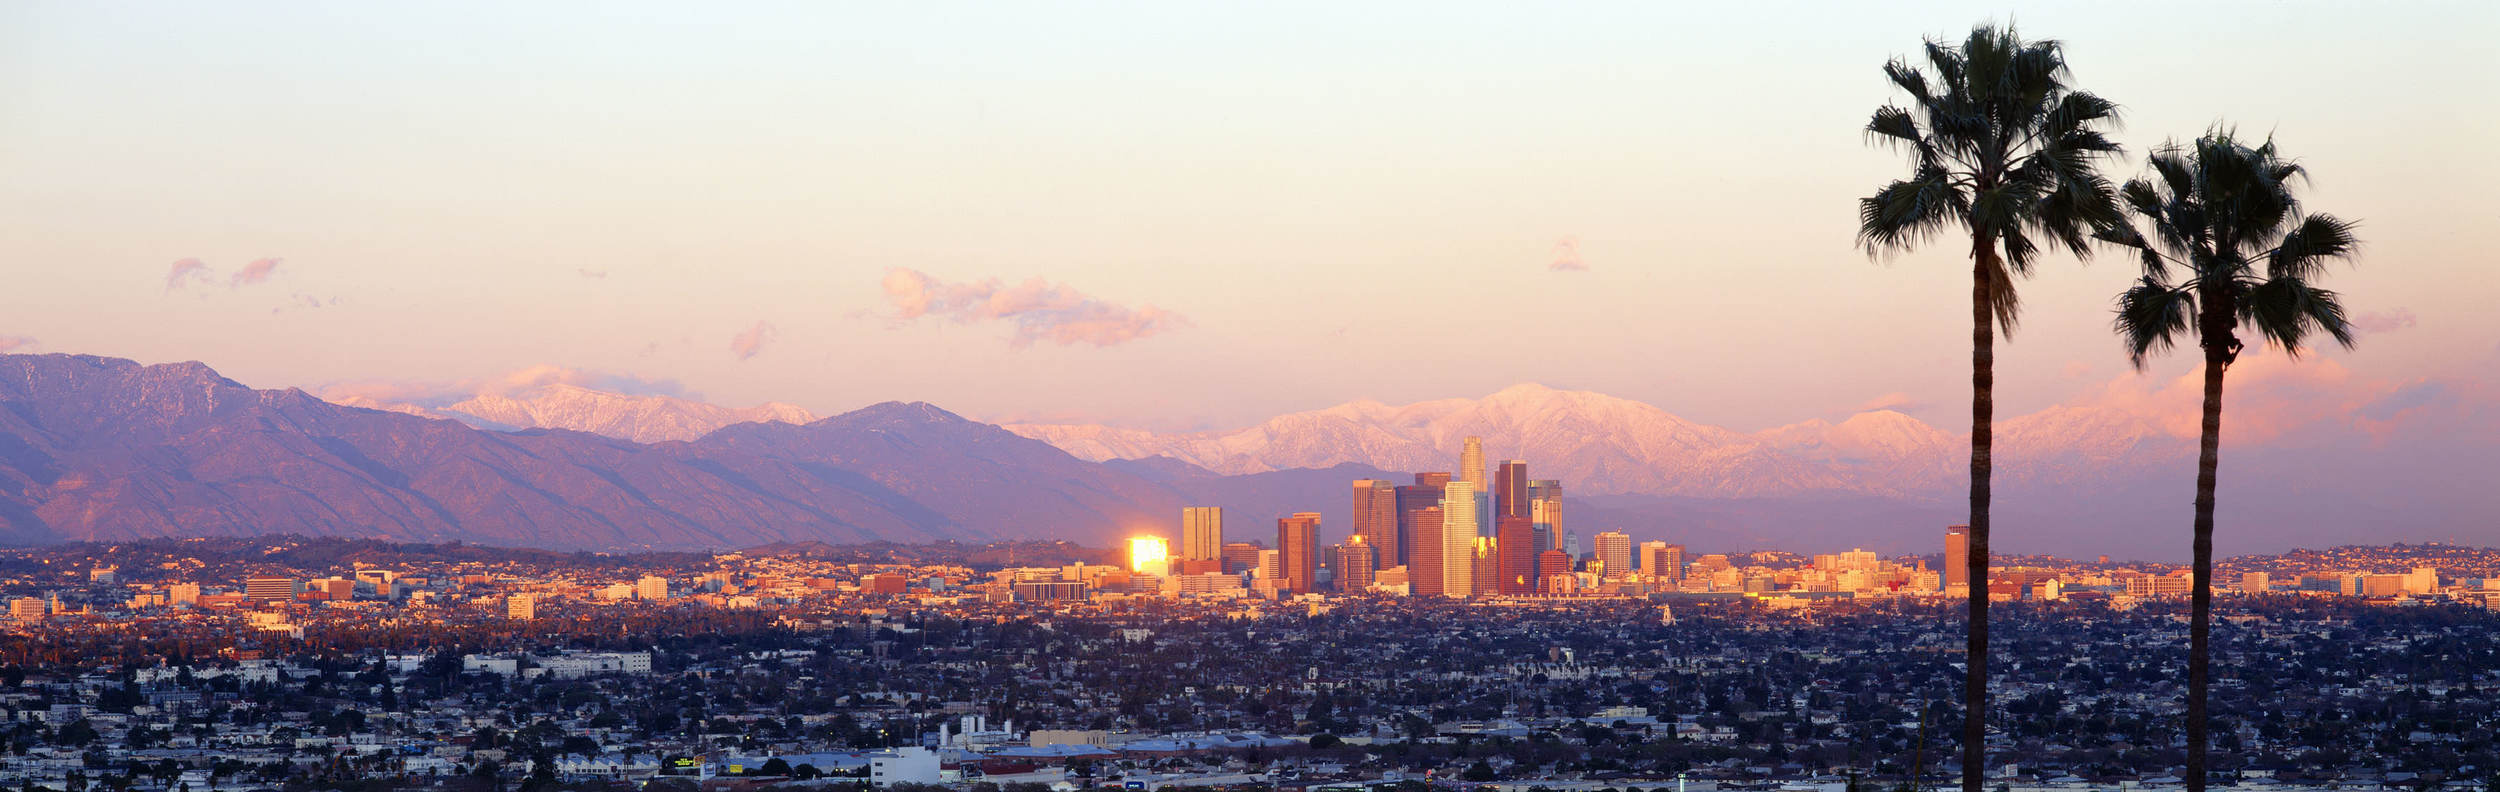 Los Angeles hoteis e roteiros de viagem 